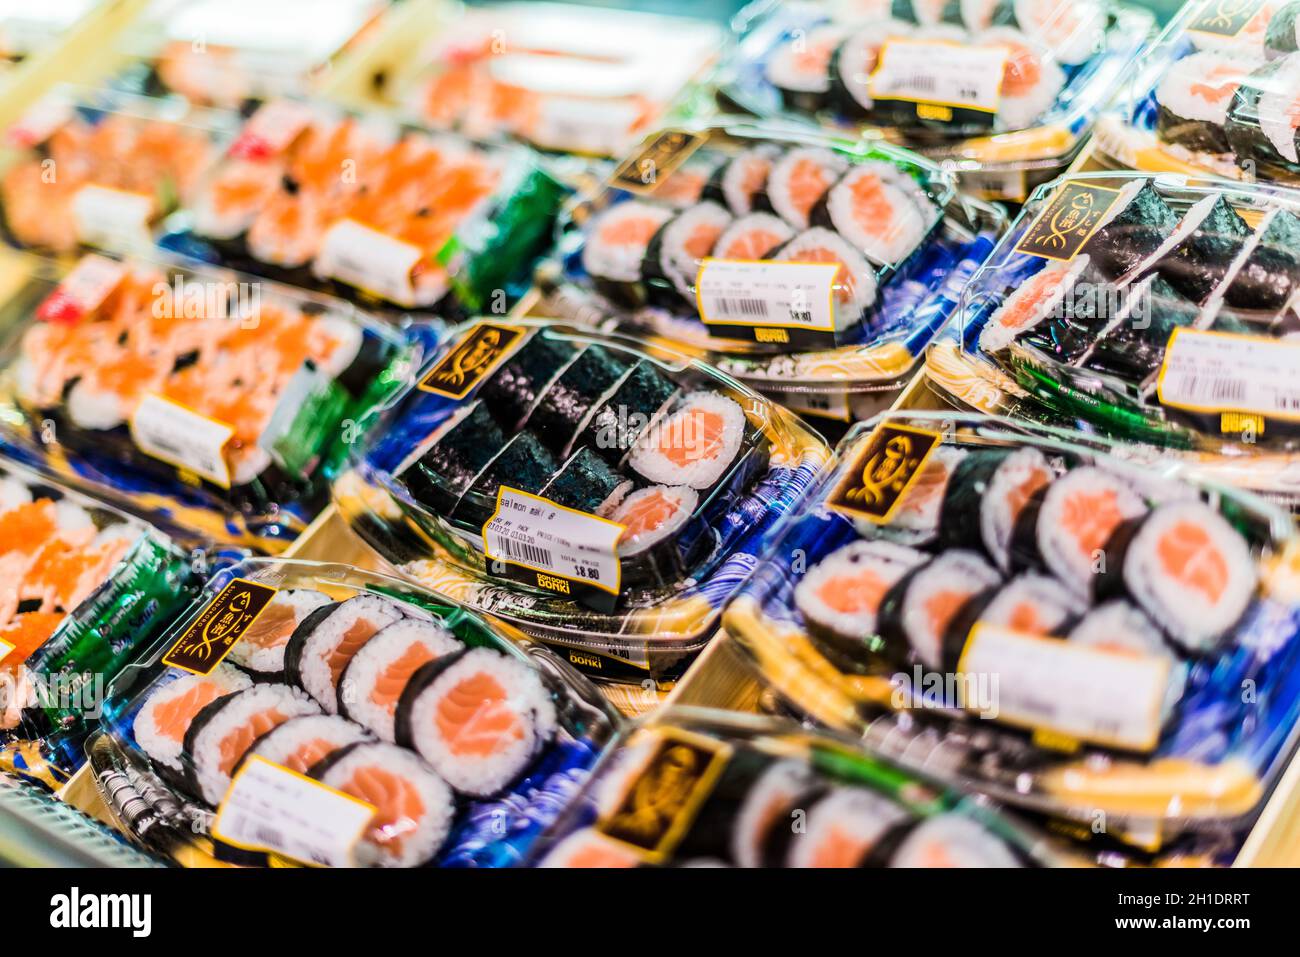 SINGAPUR - 3. MÄRZ 2020: Fertig verpacktes, verzehrfertiges Sushi, das in einem handelsüblichen Kühlschrank zum Verkauf steht Stockfoto